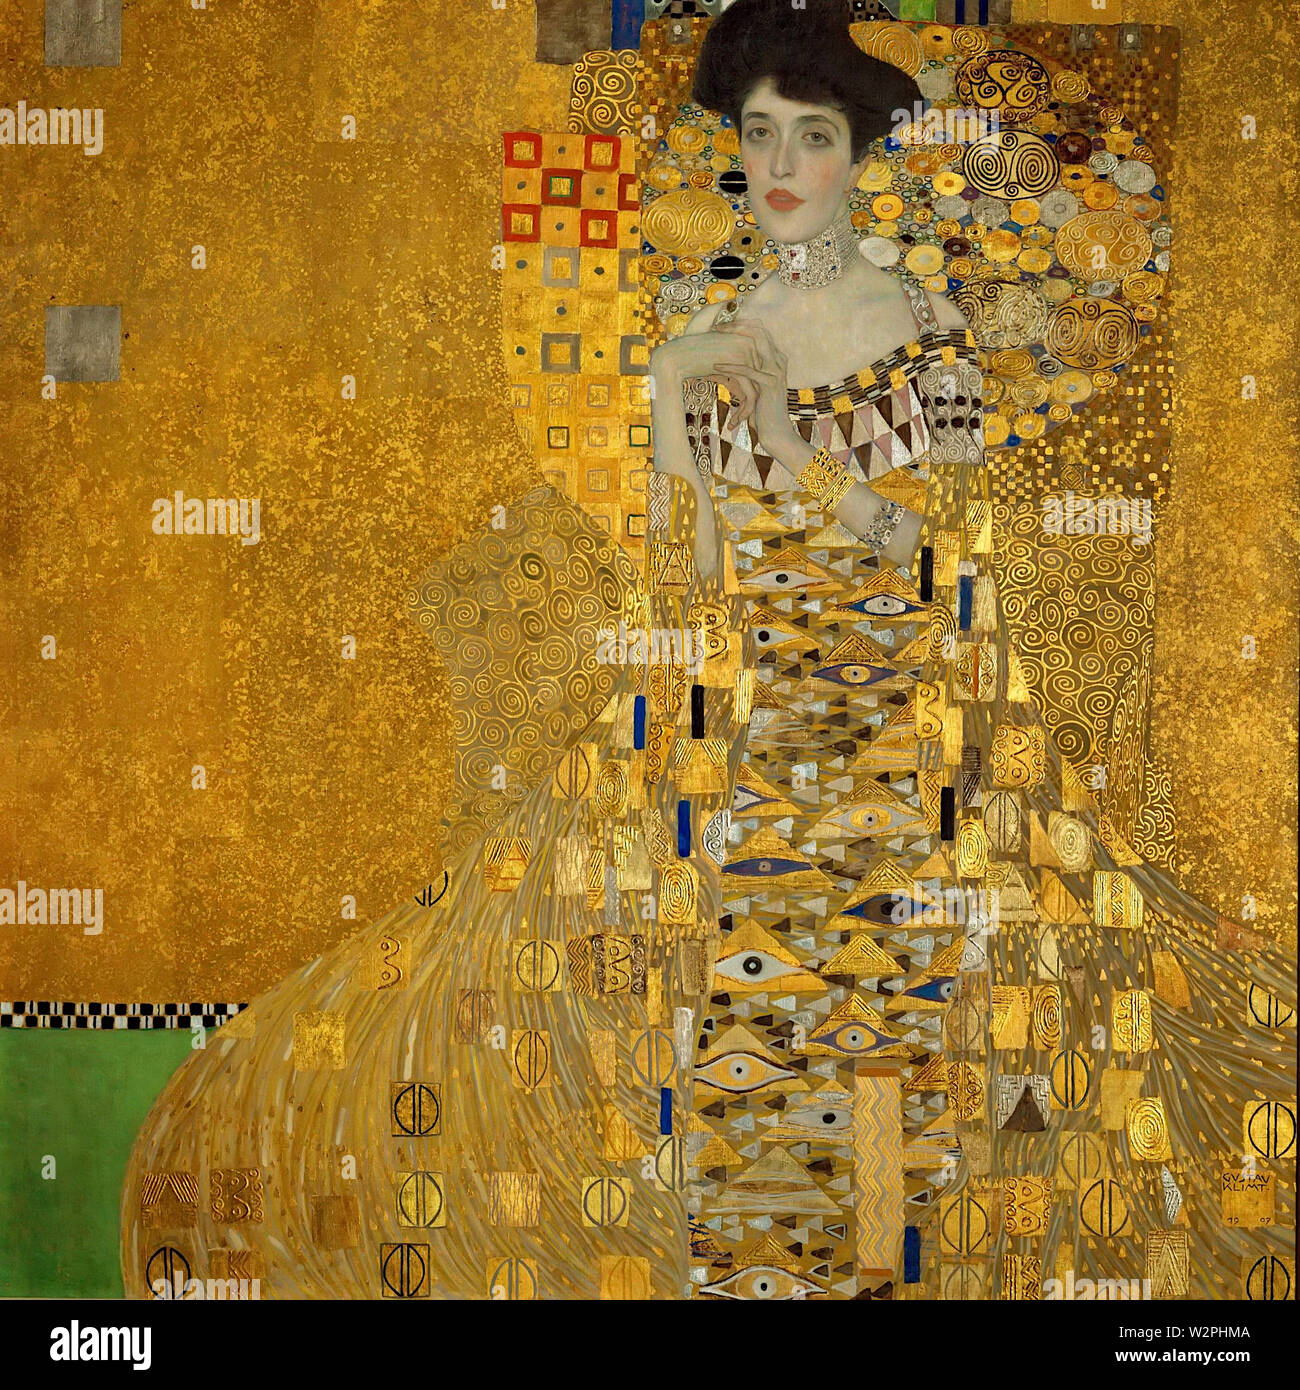 Porträt der Adele Bloch-Bauer I (1907) Gemälde von Gustav Klimt - Sehr hohe Auflösung und Bildqualität Stockfoto